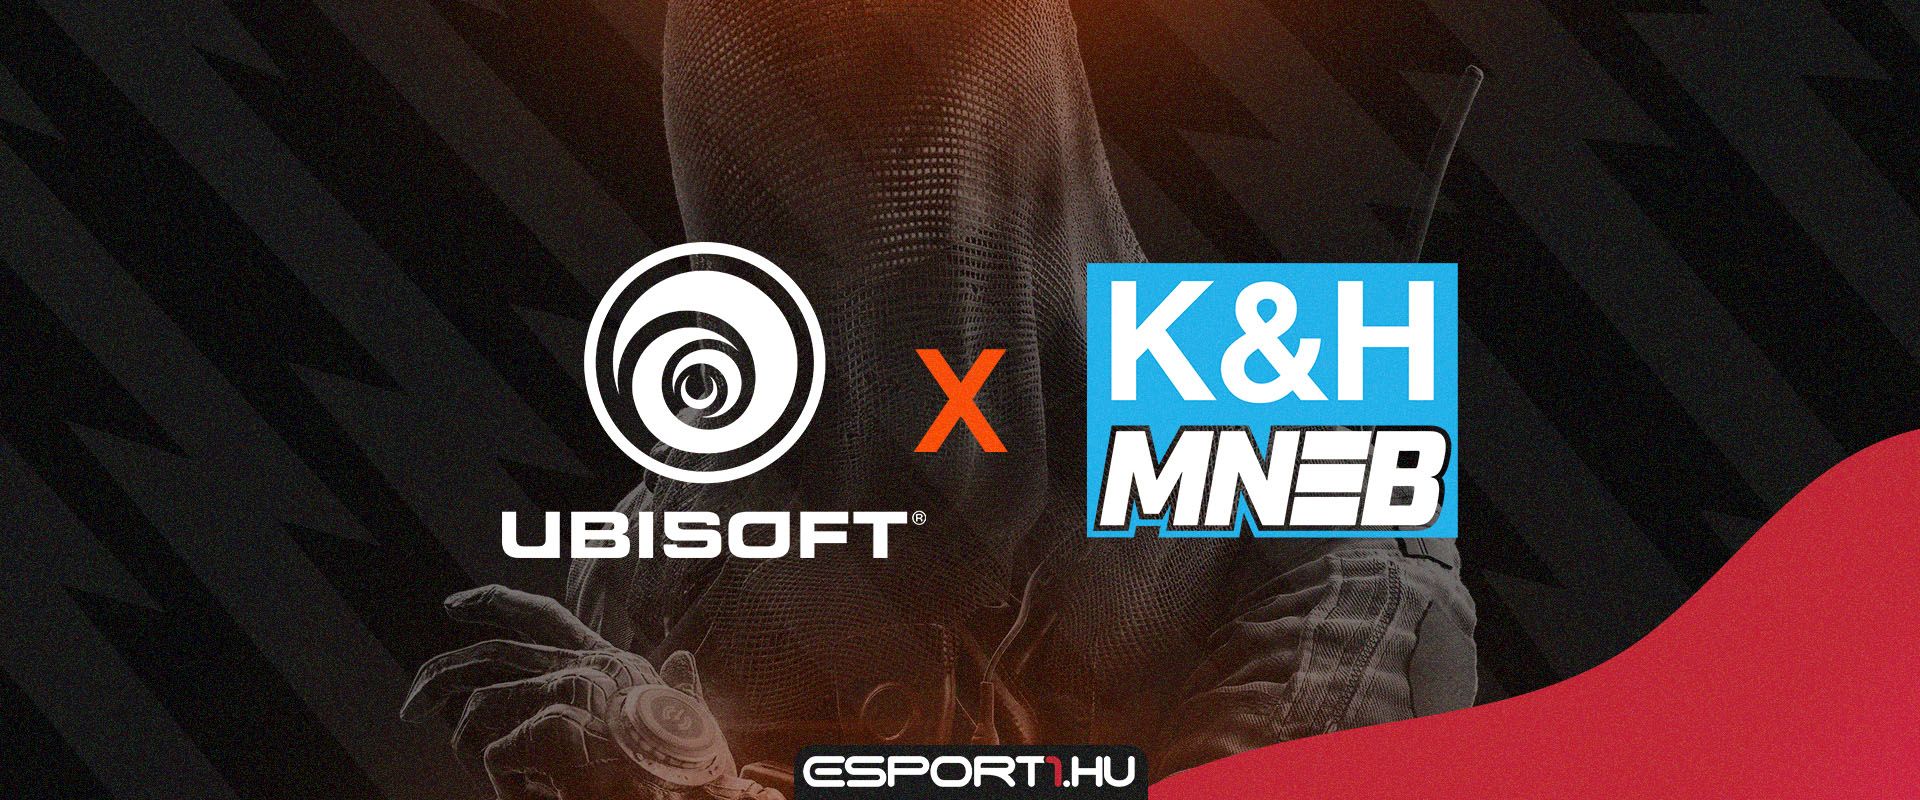 A K&H Magyar Nemzeti E-sport Bajnokság hivatalos partnere lesz a Ubisoft